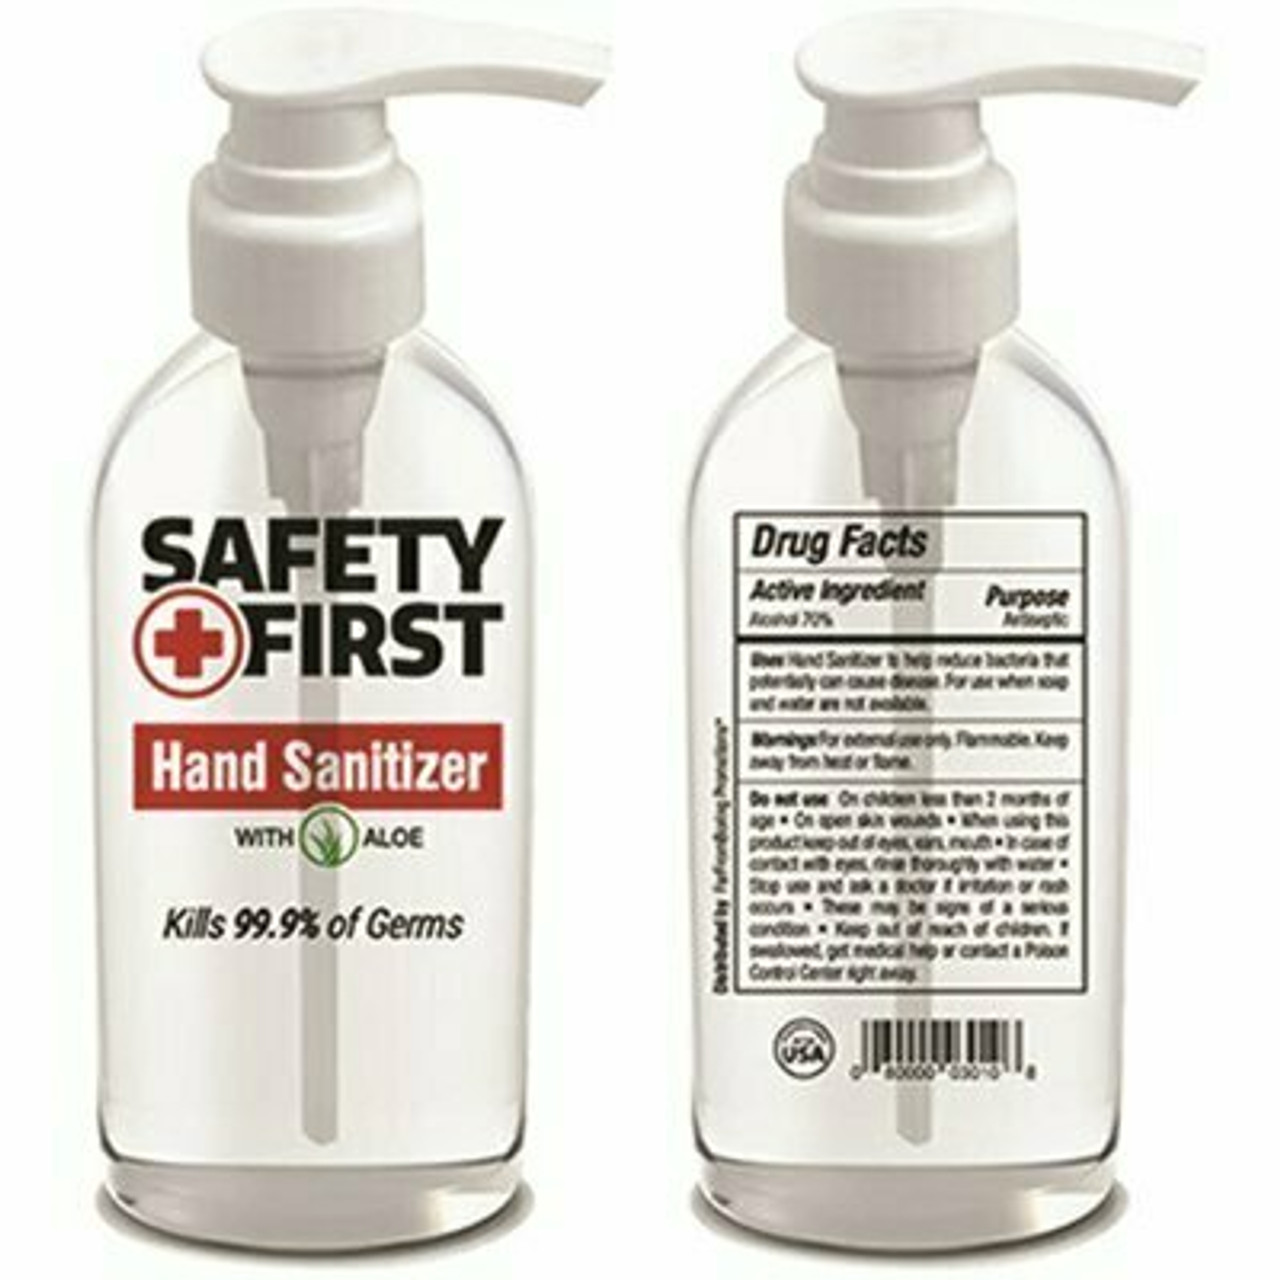 2 Oz. Ipa Safety First Hand Sanitizer